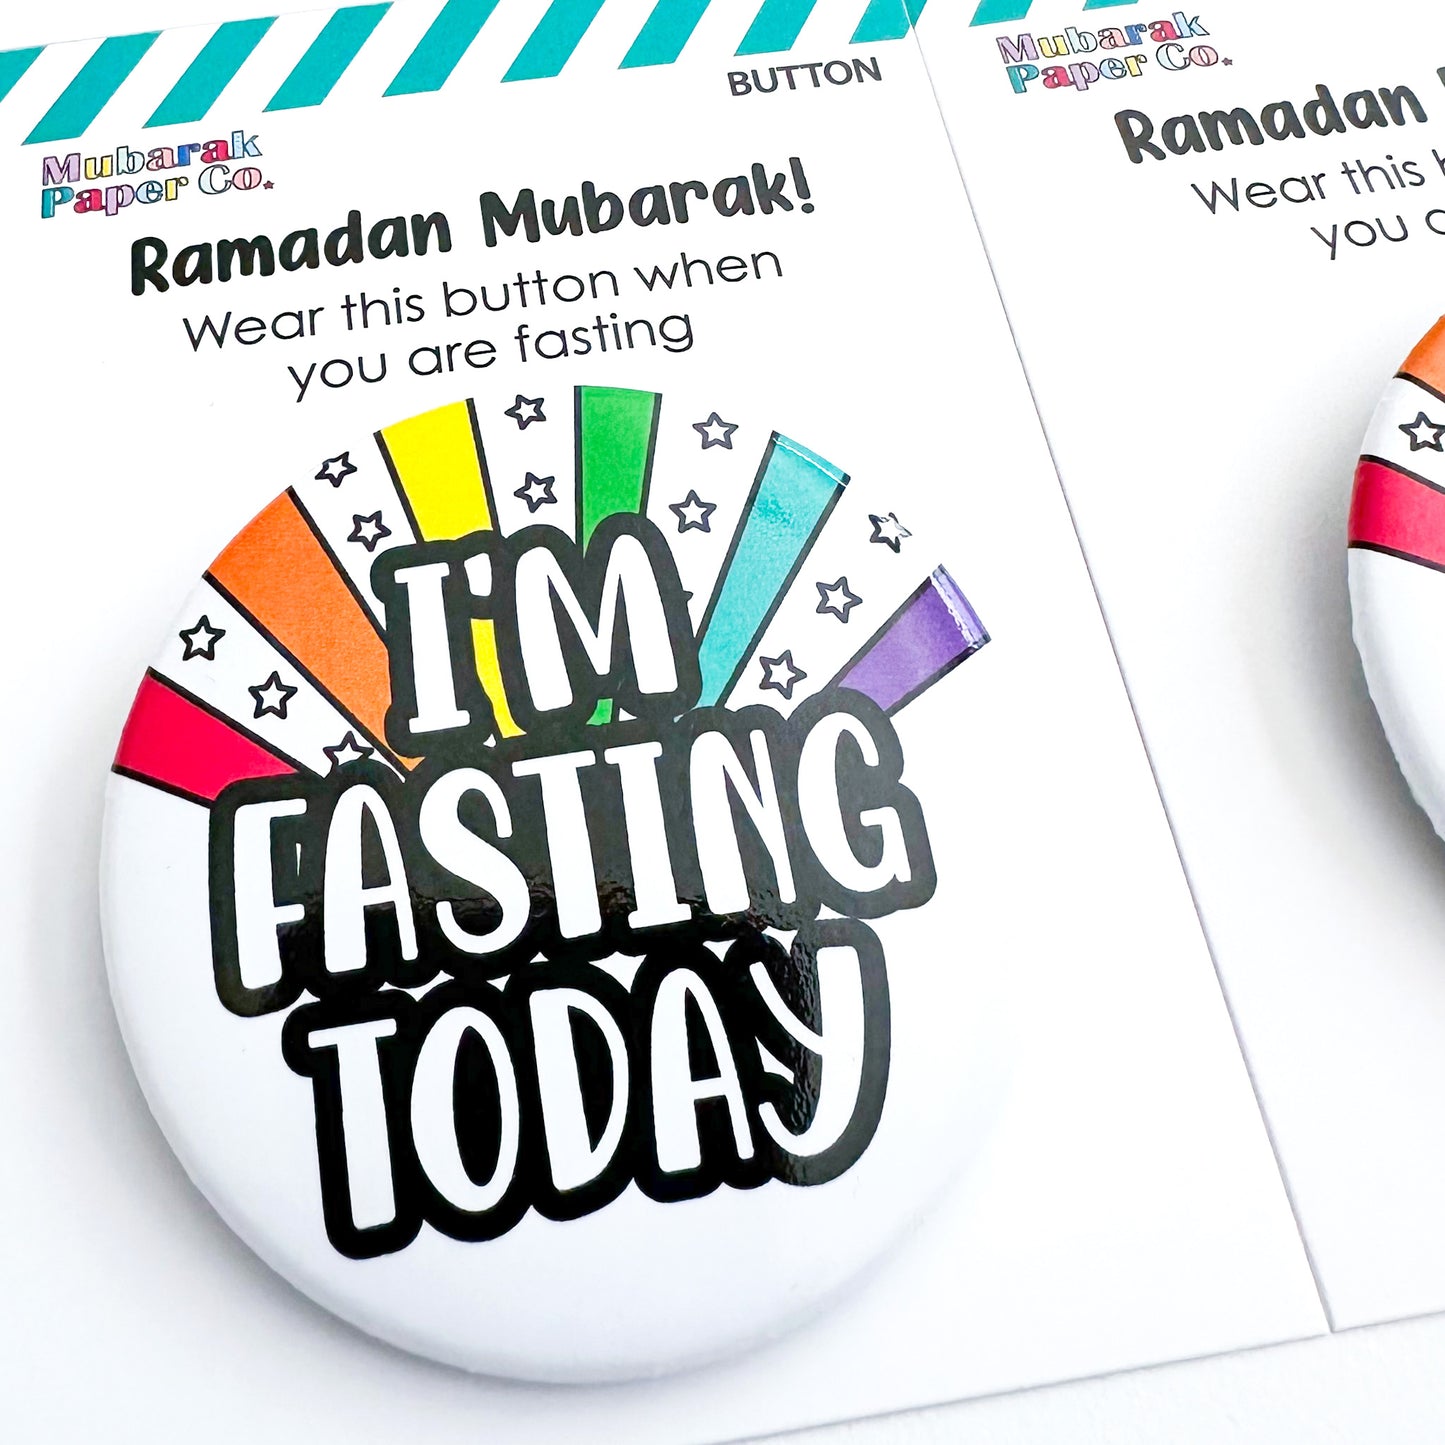 Ramadan award button